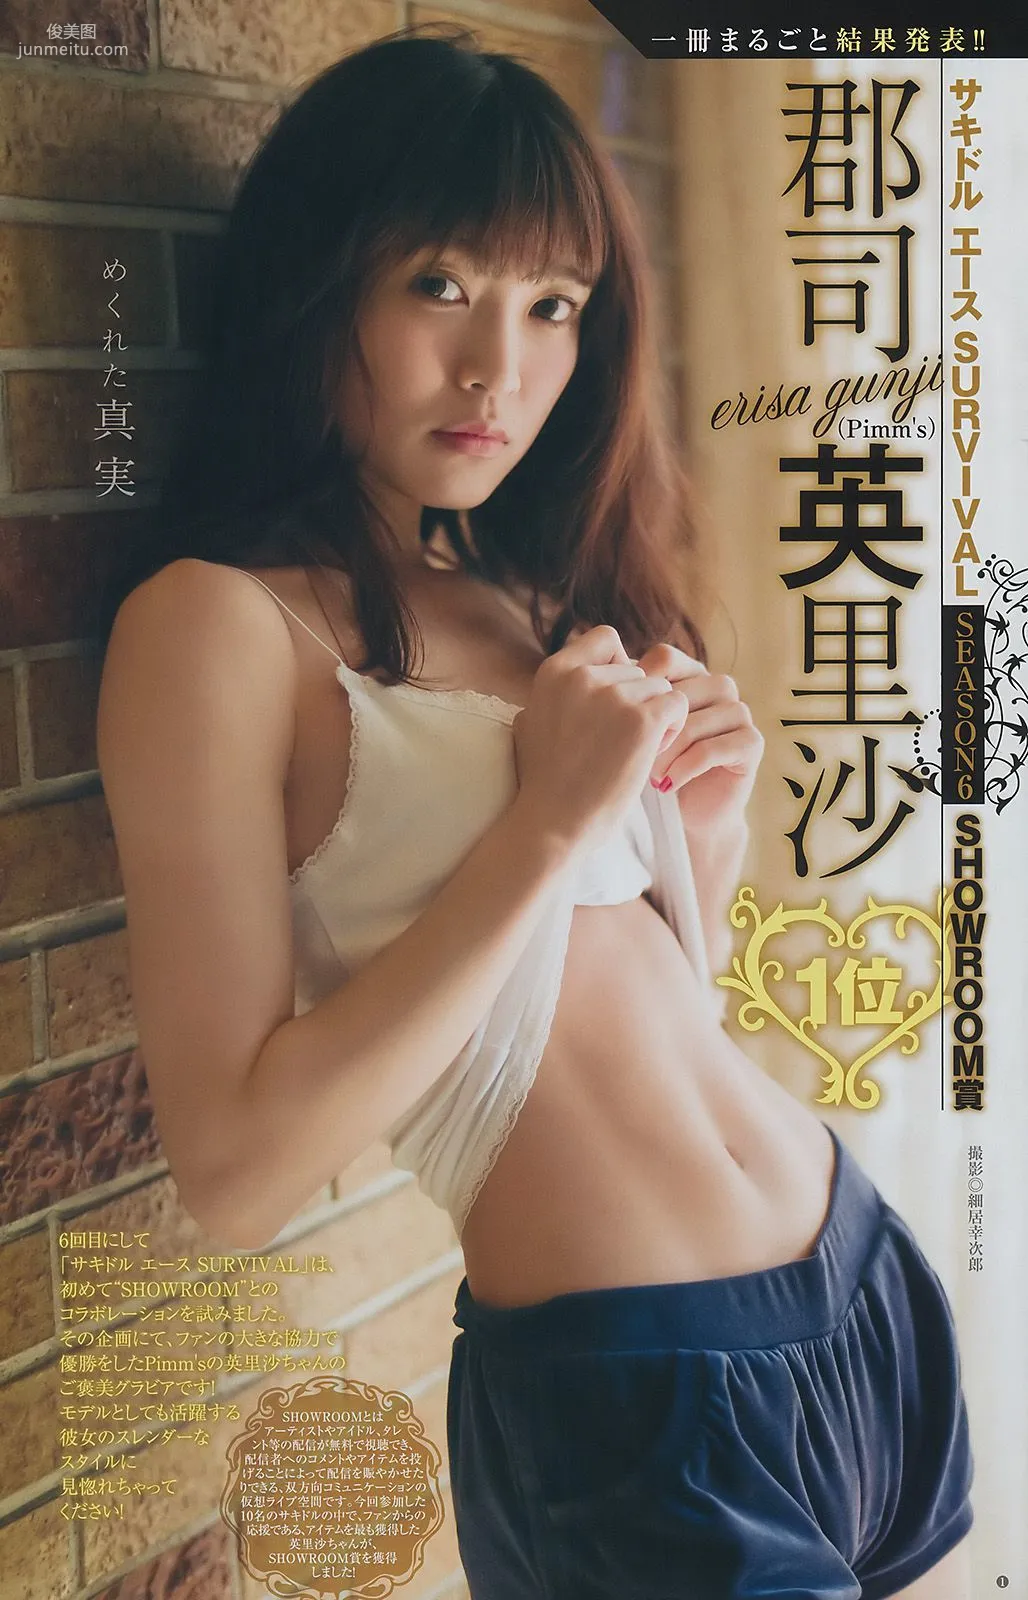 甘夏ゆず 郡司英里沙 鹿目凛 [Weekly Young Jump] 2017年No.15 写真杂志8